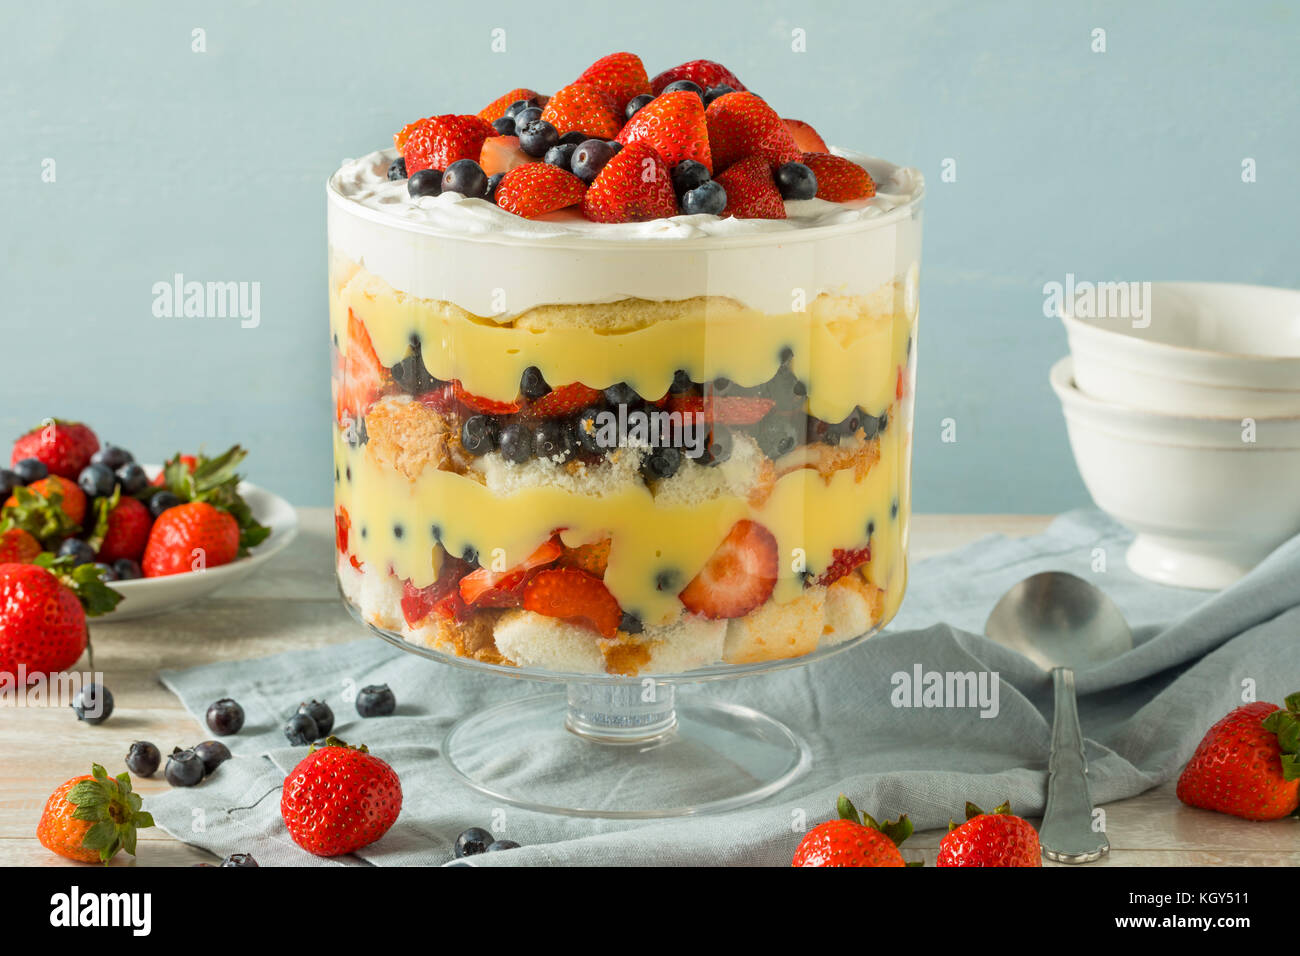 Süßes hausgemachtes Erdbeer trifle Dessert mit Pudding und Kuchen Stockfoto